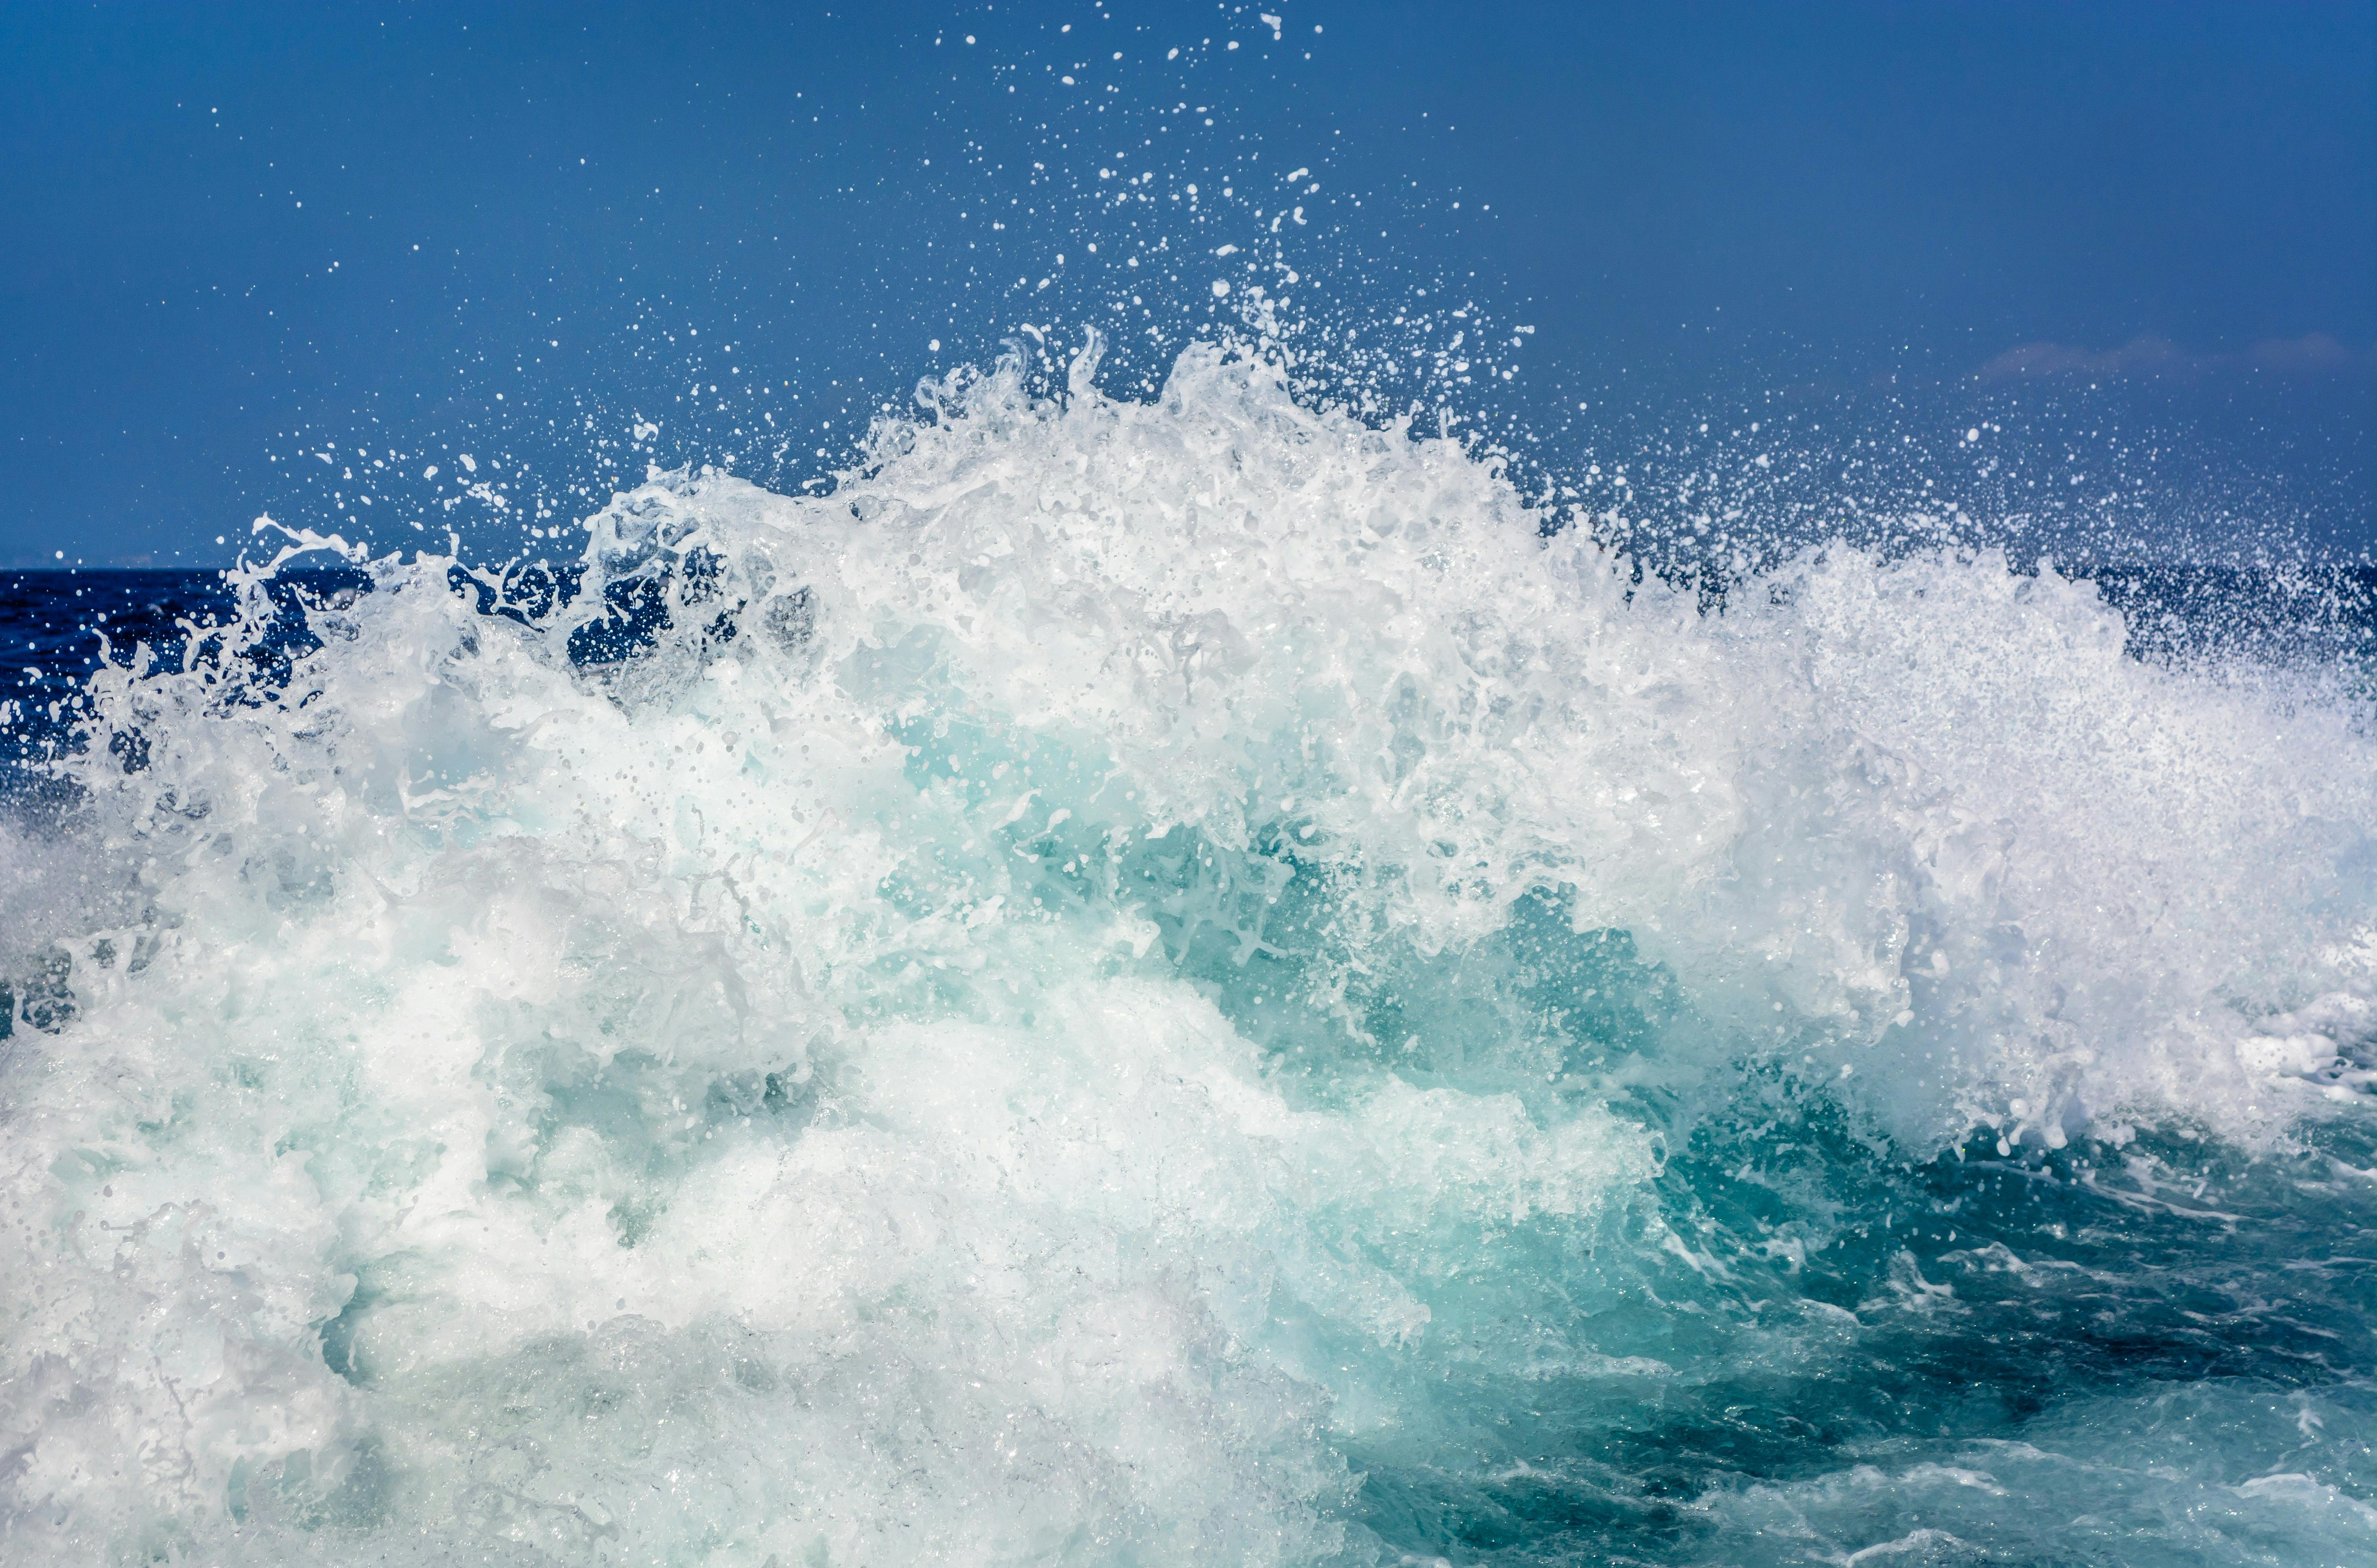 Ảnh sóng biển đẹp: Với những ảnh sóng biển đẹp như trong mơ này, bạn sẽ có cảm giác như đang trải nghiệm cảm giác tự do và hoàn toàn thư thái. Những hình ảnh của những làn sóng hoang dã, khung cảnh màu xanh độc đáo và nắm giữ sức mạnh của tự nhiên, tất cả sẽ khiến bạn bị cuốn hút ngay từ cái nhìn đầu tiên.